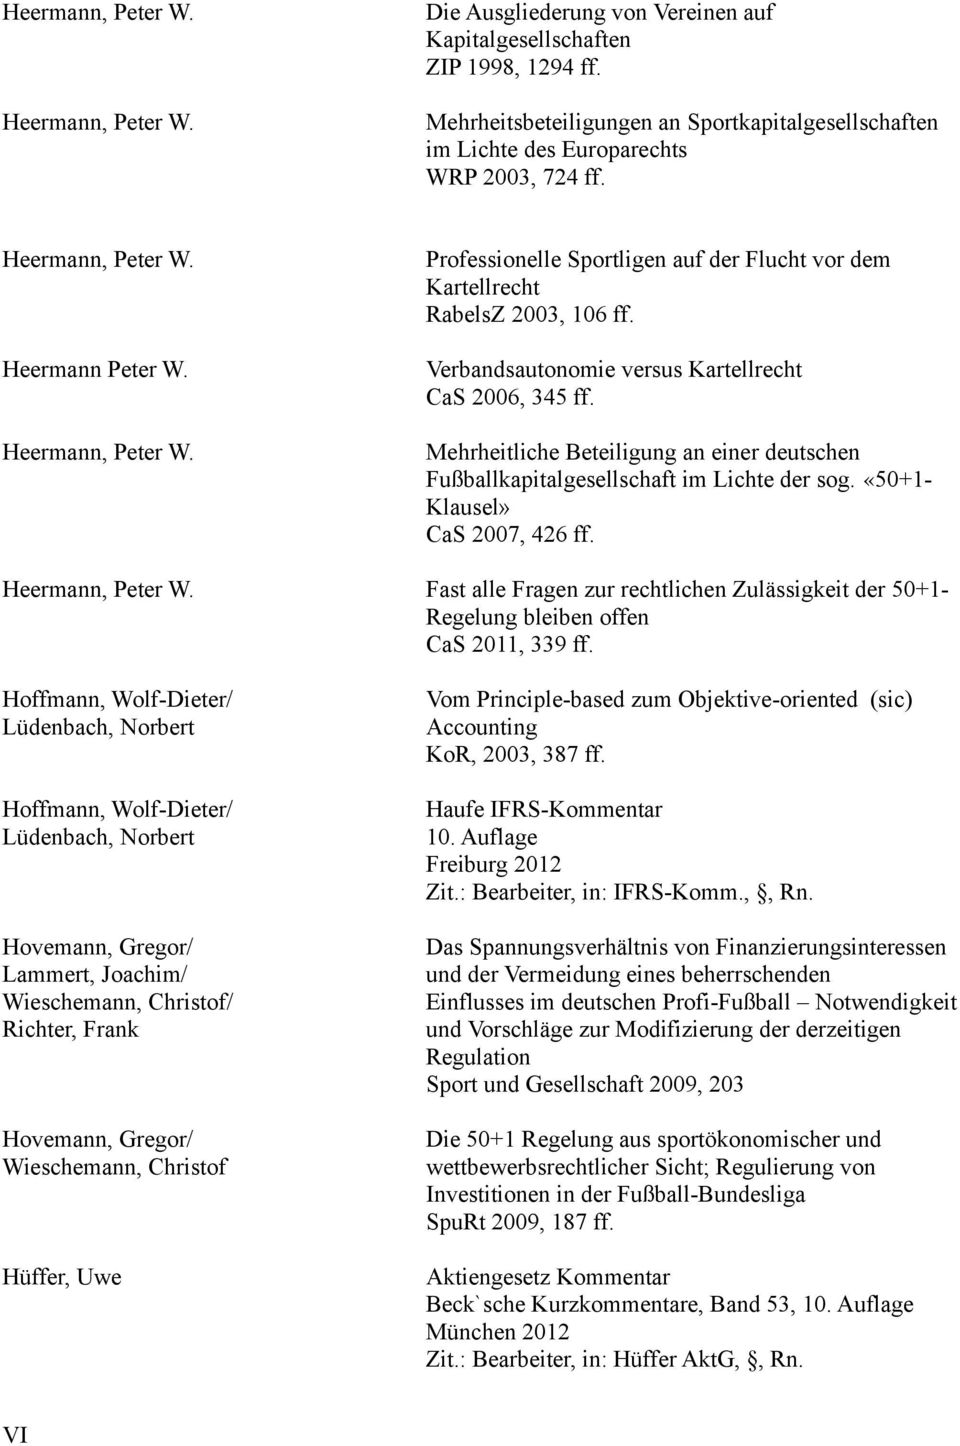 Verbandsautonomie versus Kartellrecht CaS 2006, 345 ff. Mehrheitliche Beteiligung an einer deutschen Fußballkapitalgesellschaft im Lichte der sog. «50+1- Klausel» CaS 2007, 426 ff. Heermann, Peter W.